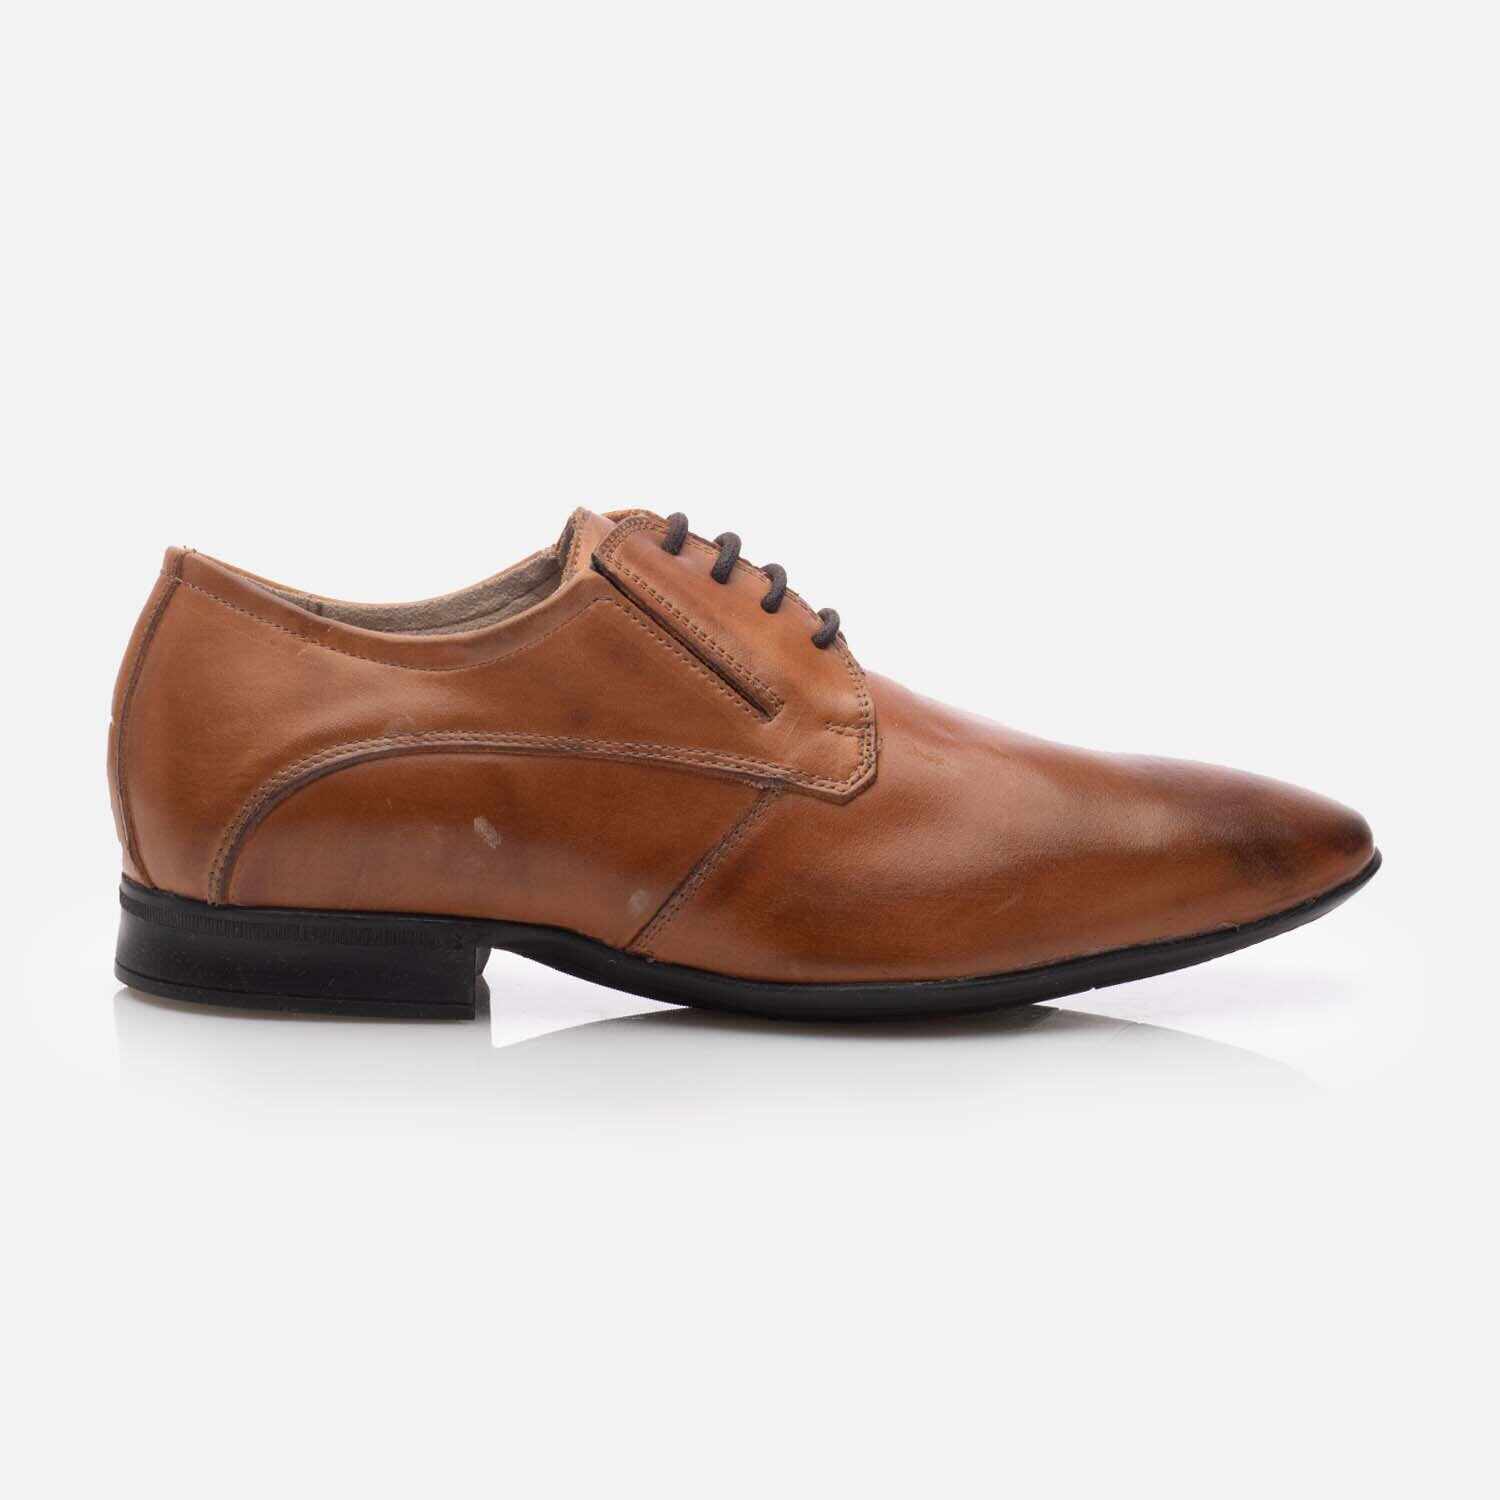 Pantofi eleganți bărbați din piele naturală - 3108 Cognac Box